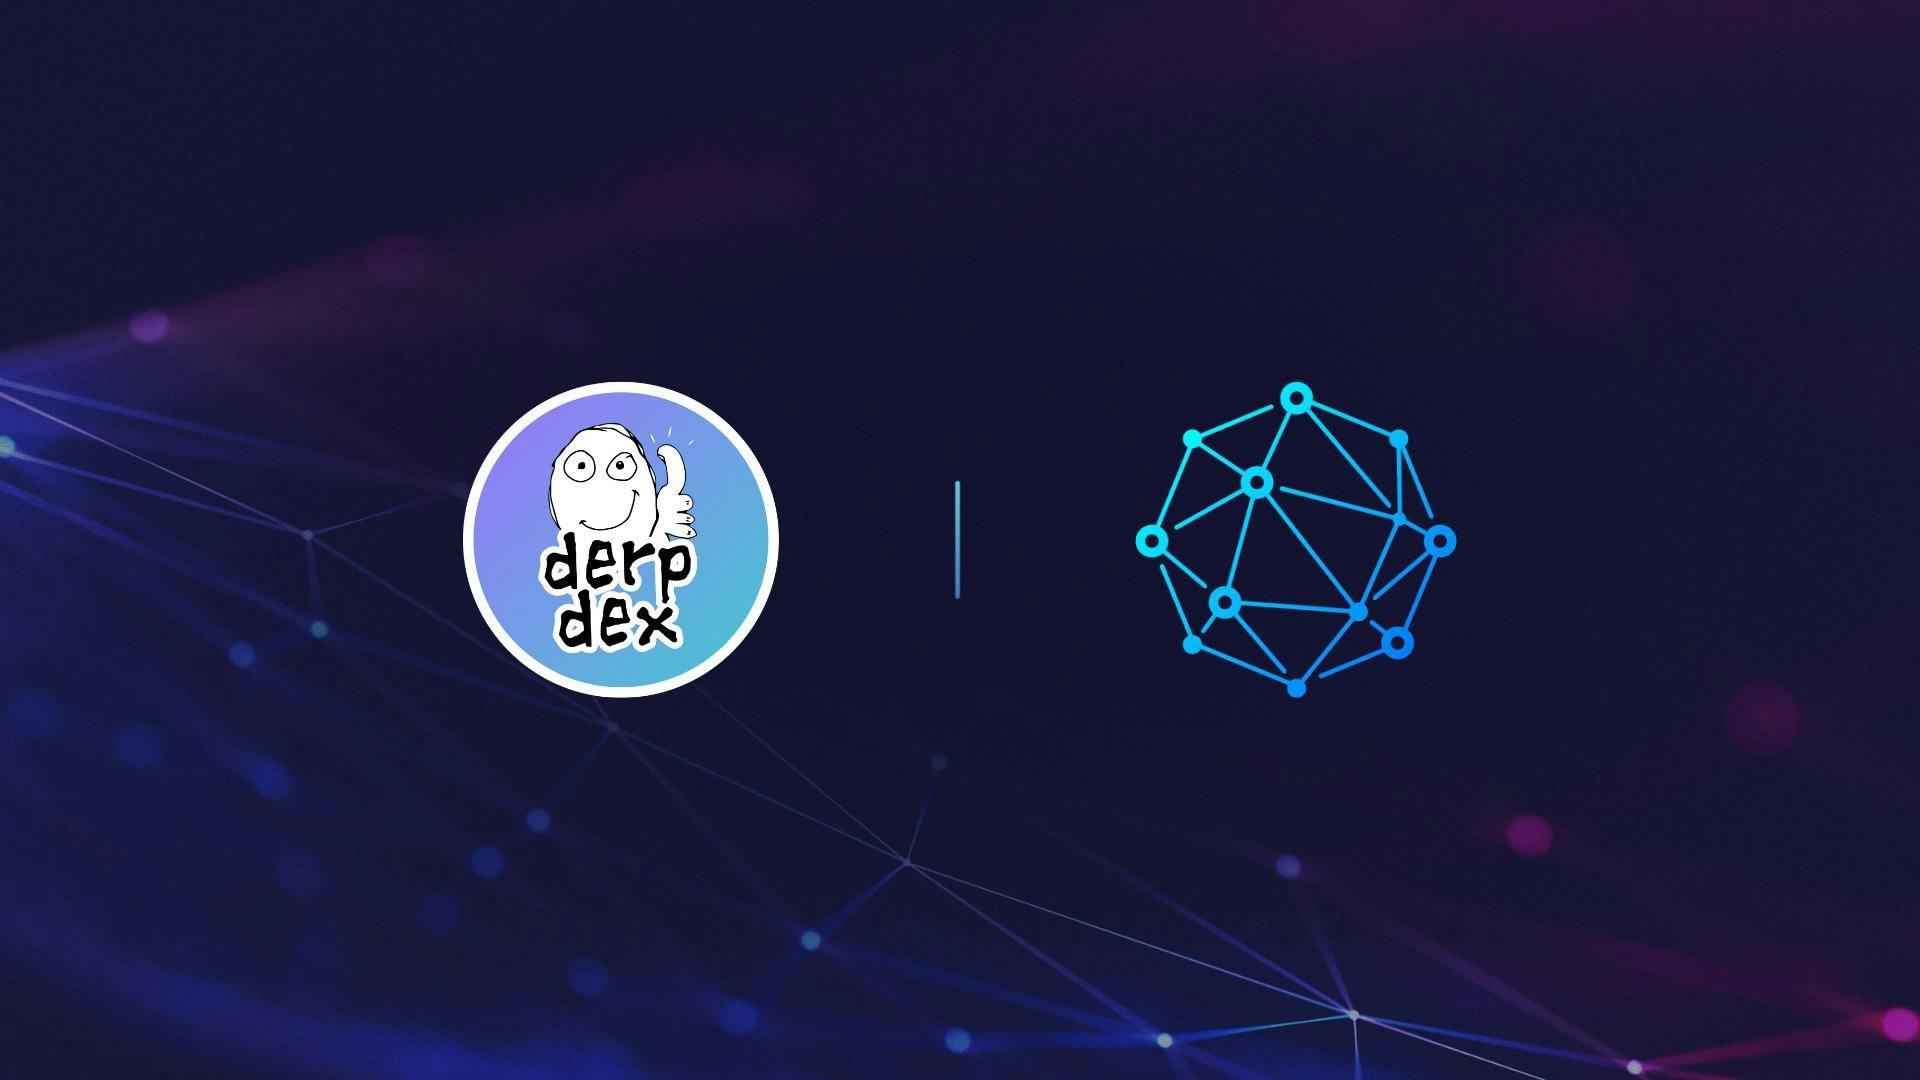 DerpDEX X CoinWeb Partnership